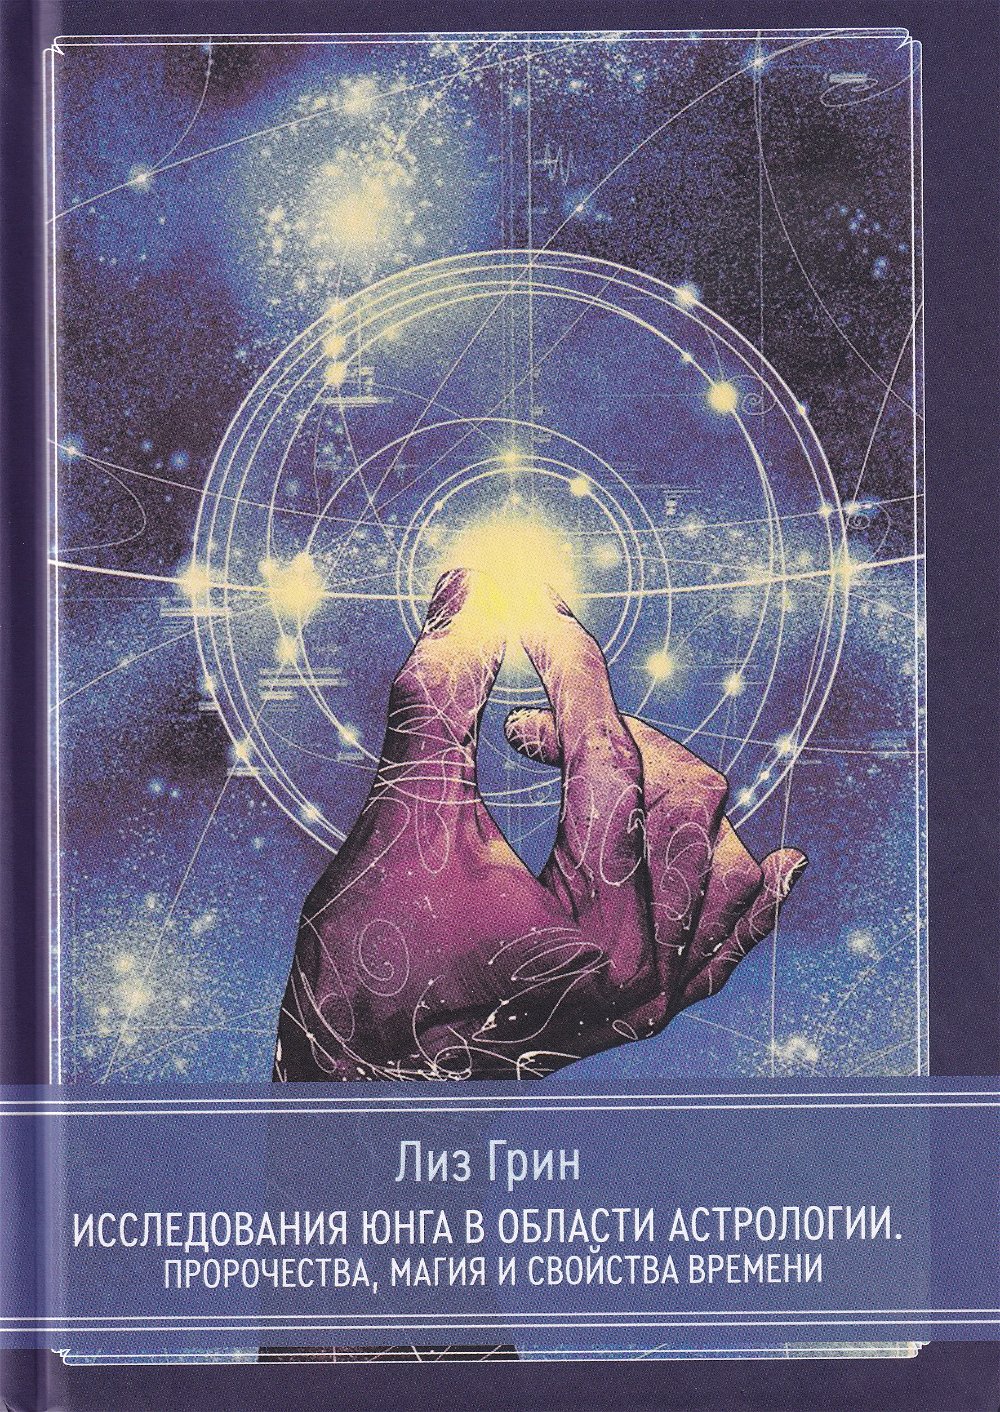 "Исследования Юнга в области астрологии. Пророчества, магия и свойства времени" 